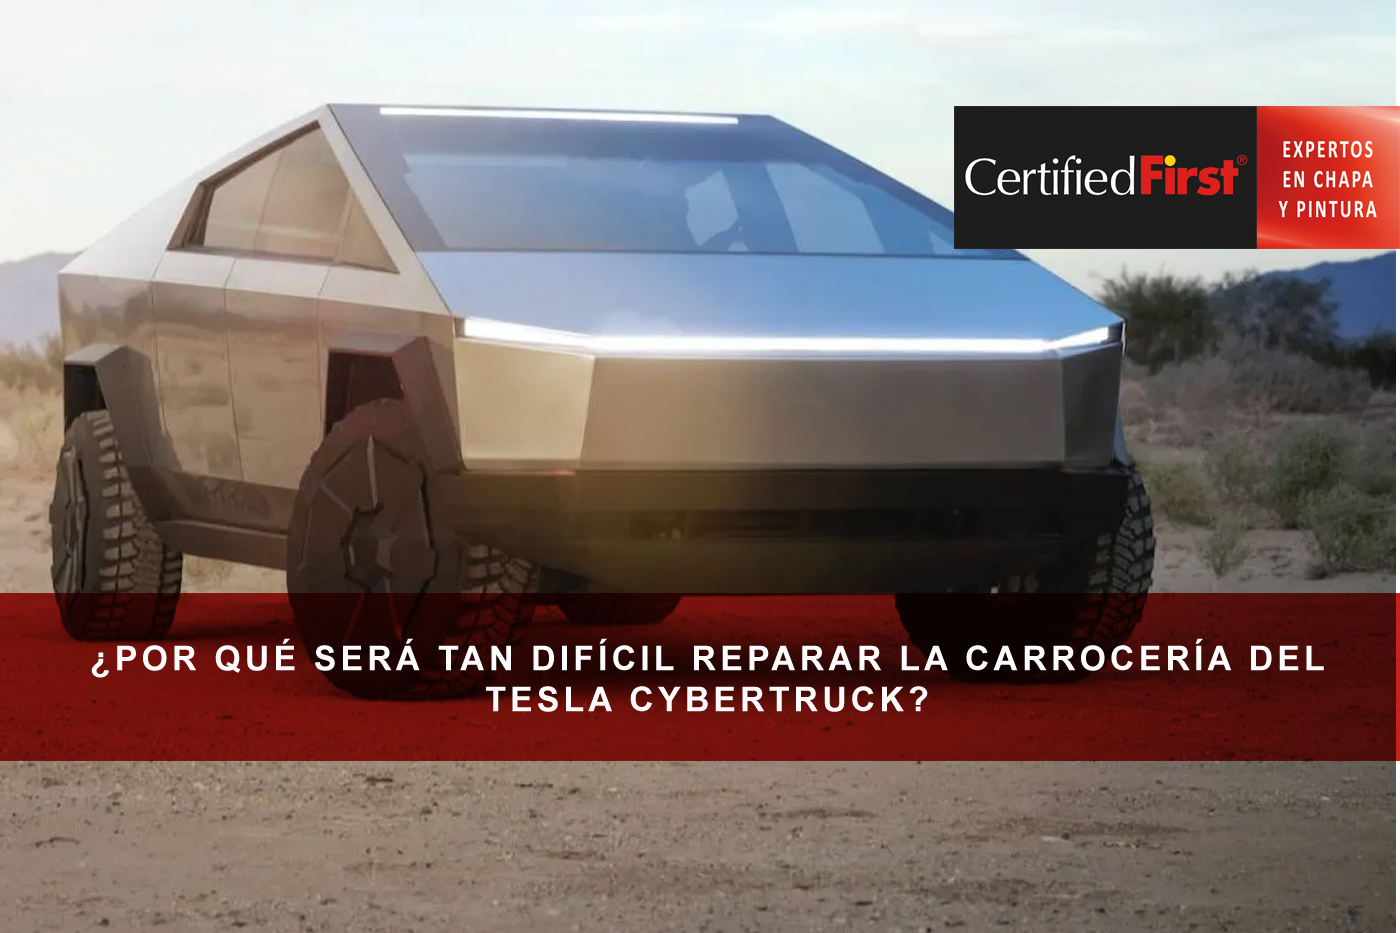 Nuevos desafíos para los talleres de chapa y pintura: ¿por qué será tan difícil reparar la carrocería del Tesla CyberTruck?